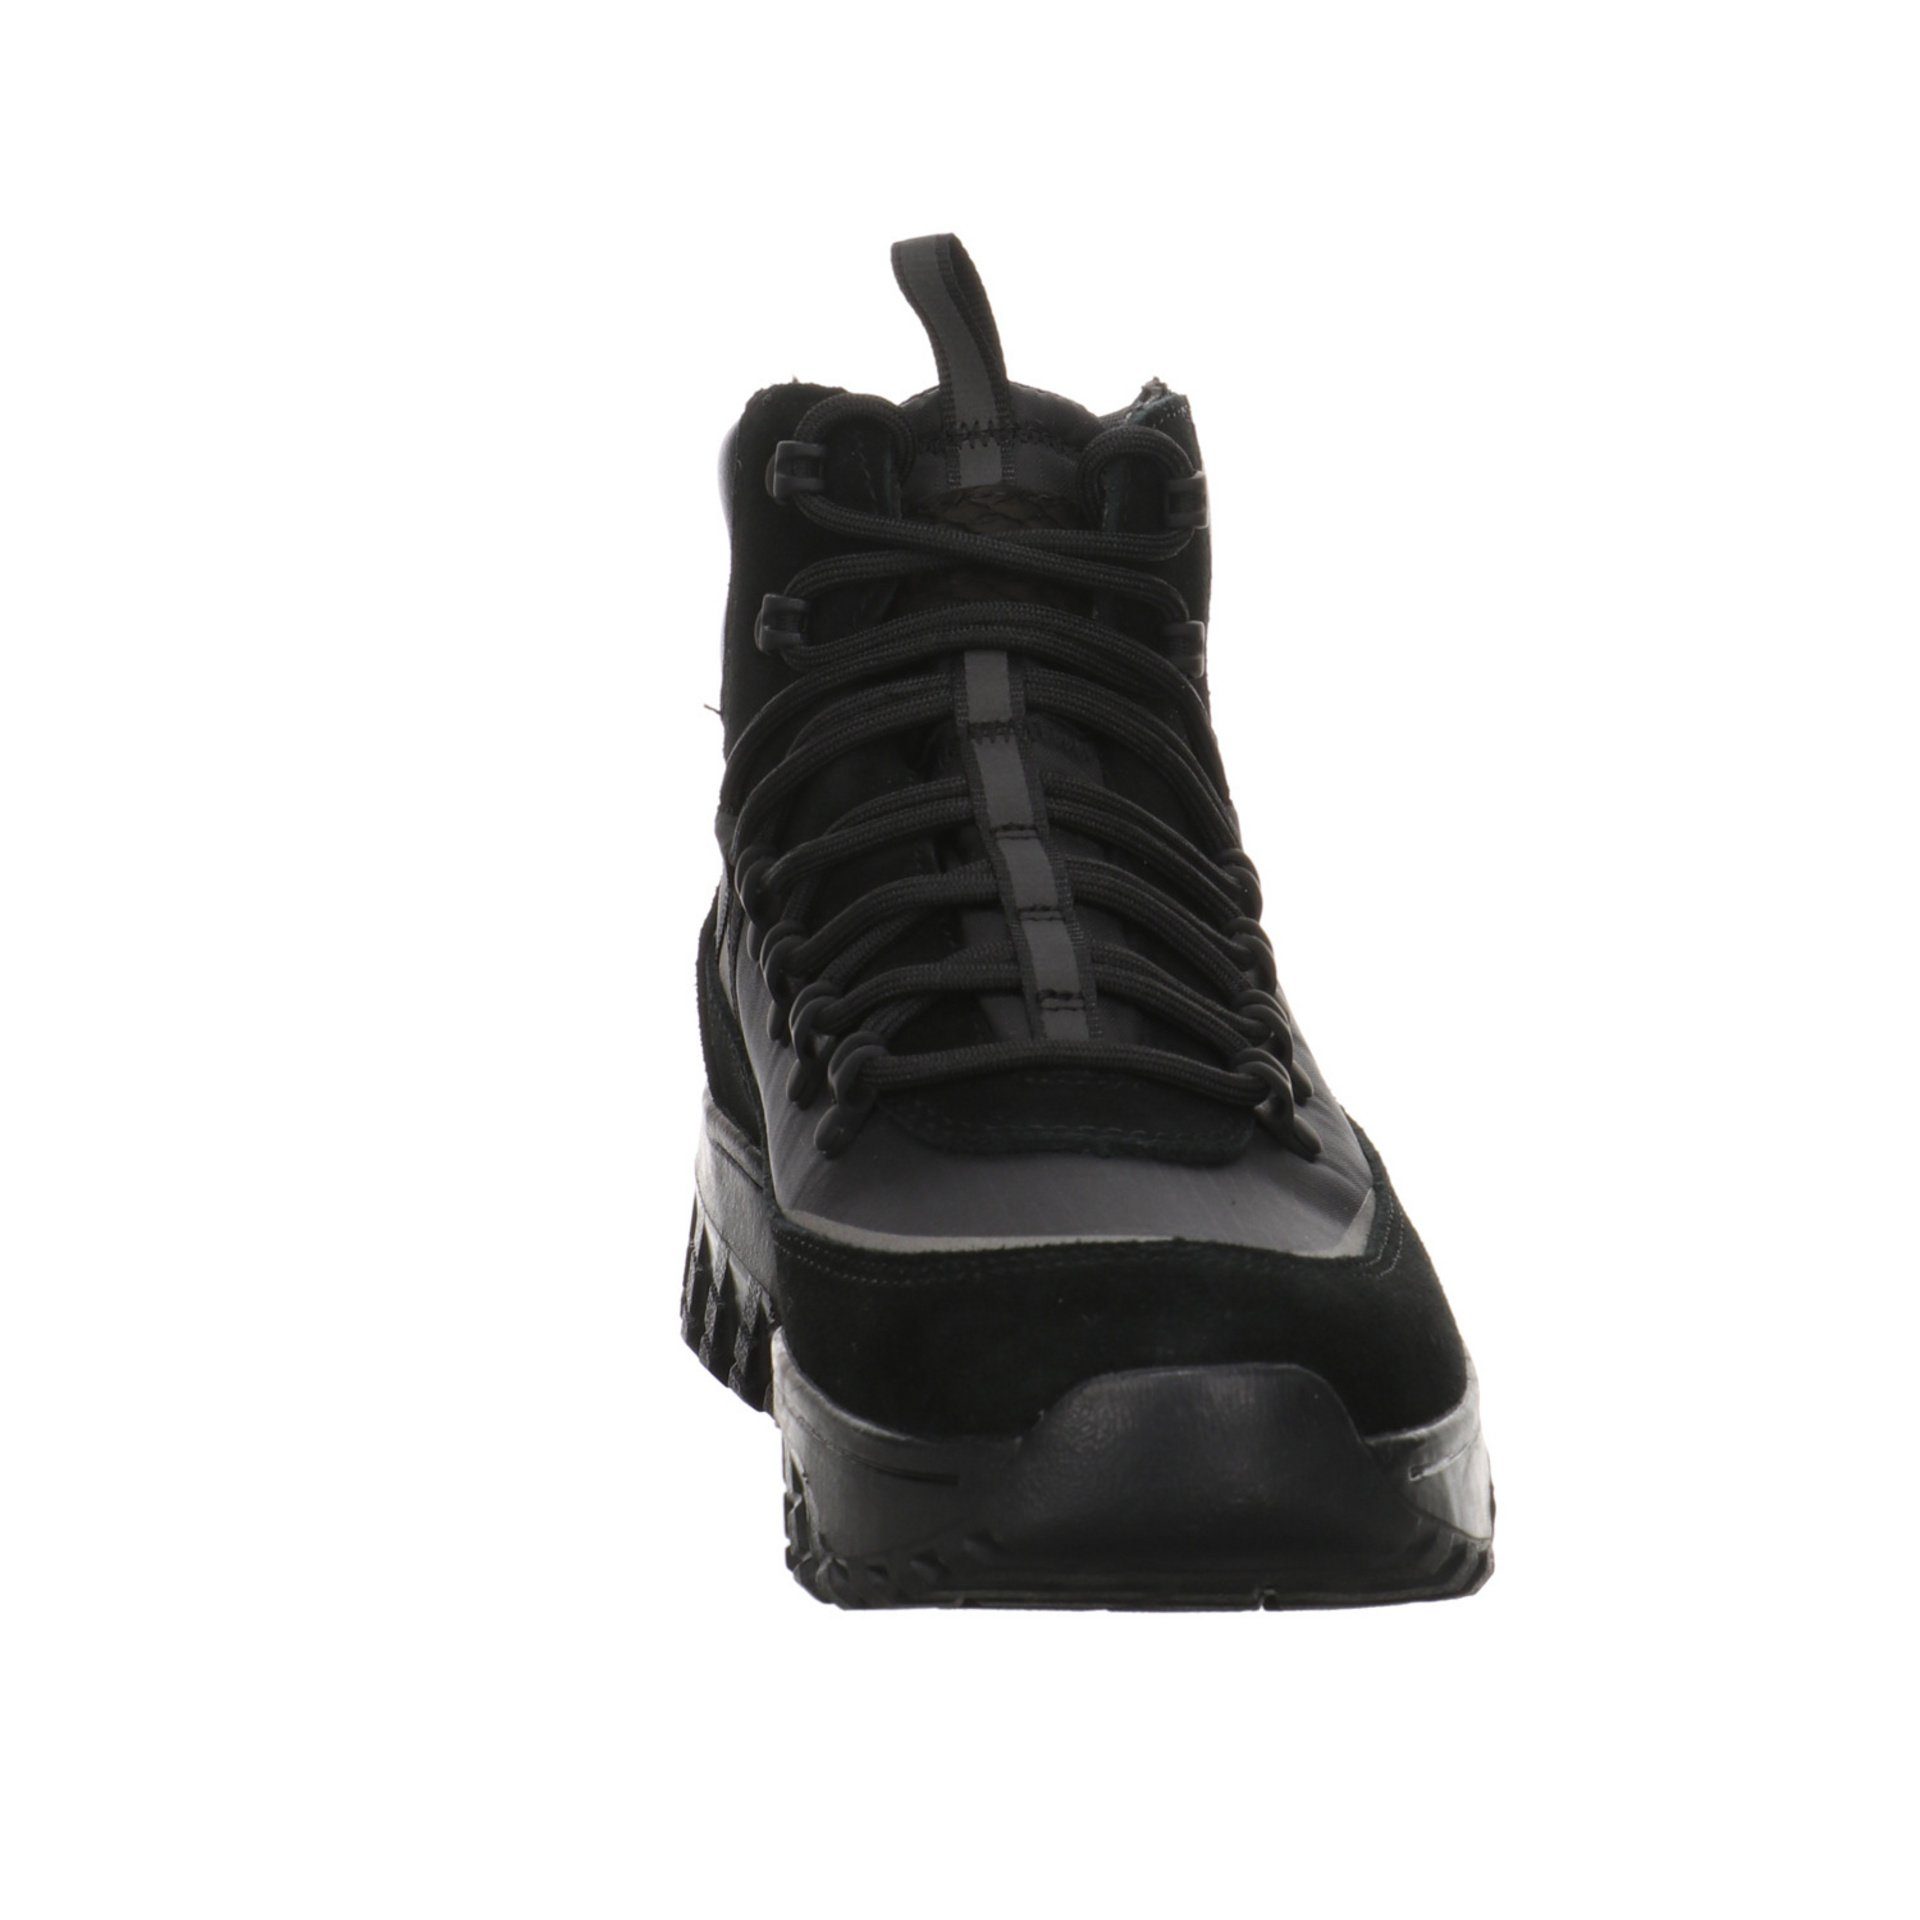 WODEN Stiefeletten Schnürstiefelette Tessa Boots Damen black Leder-/Textilkombination Schuhe